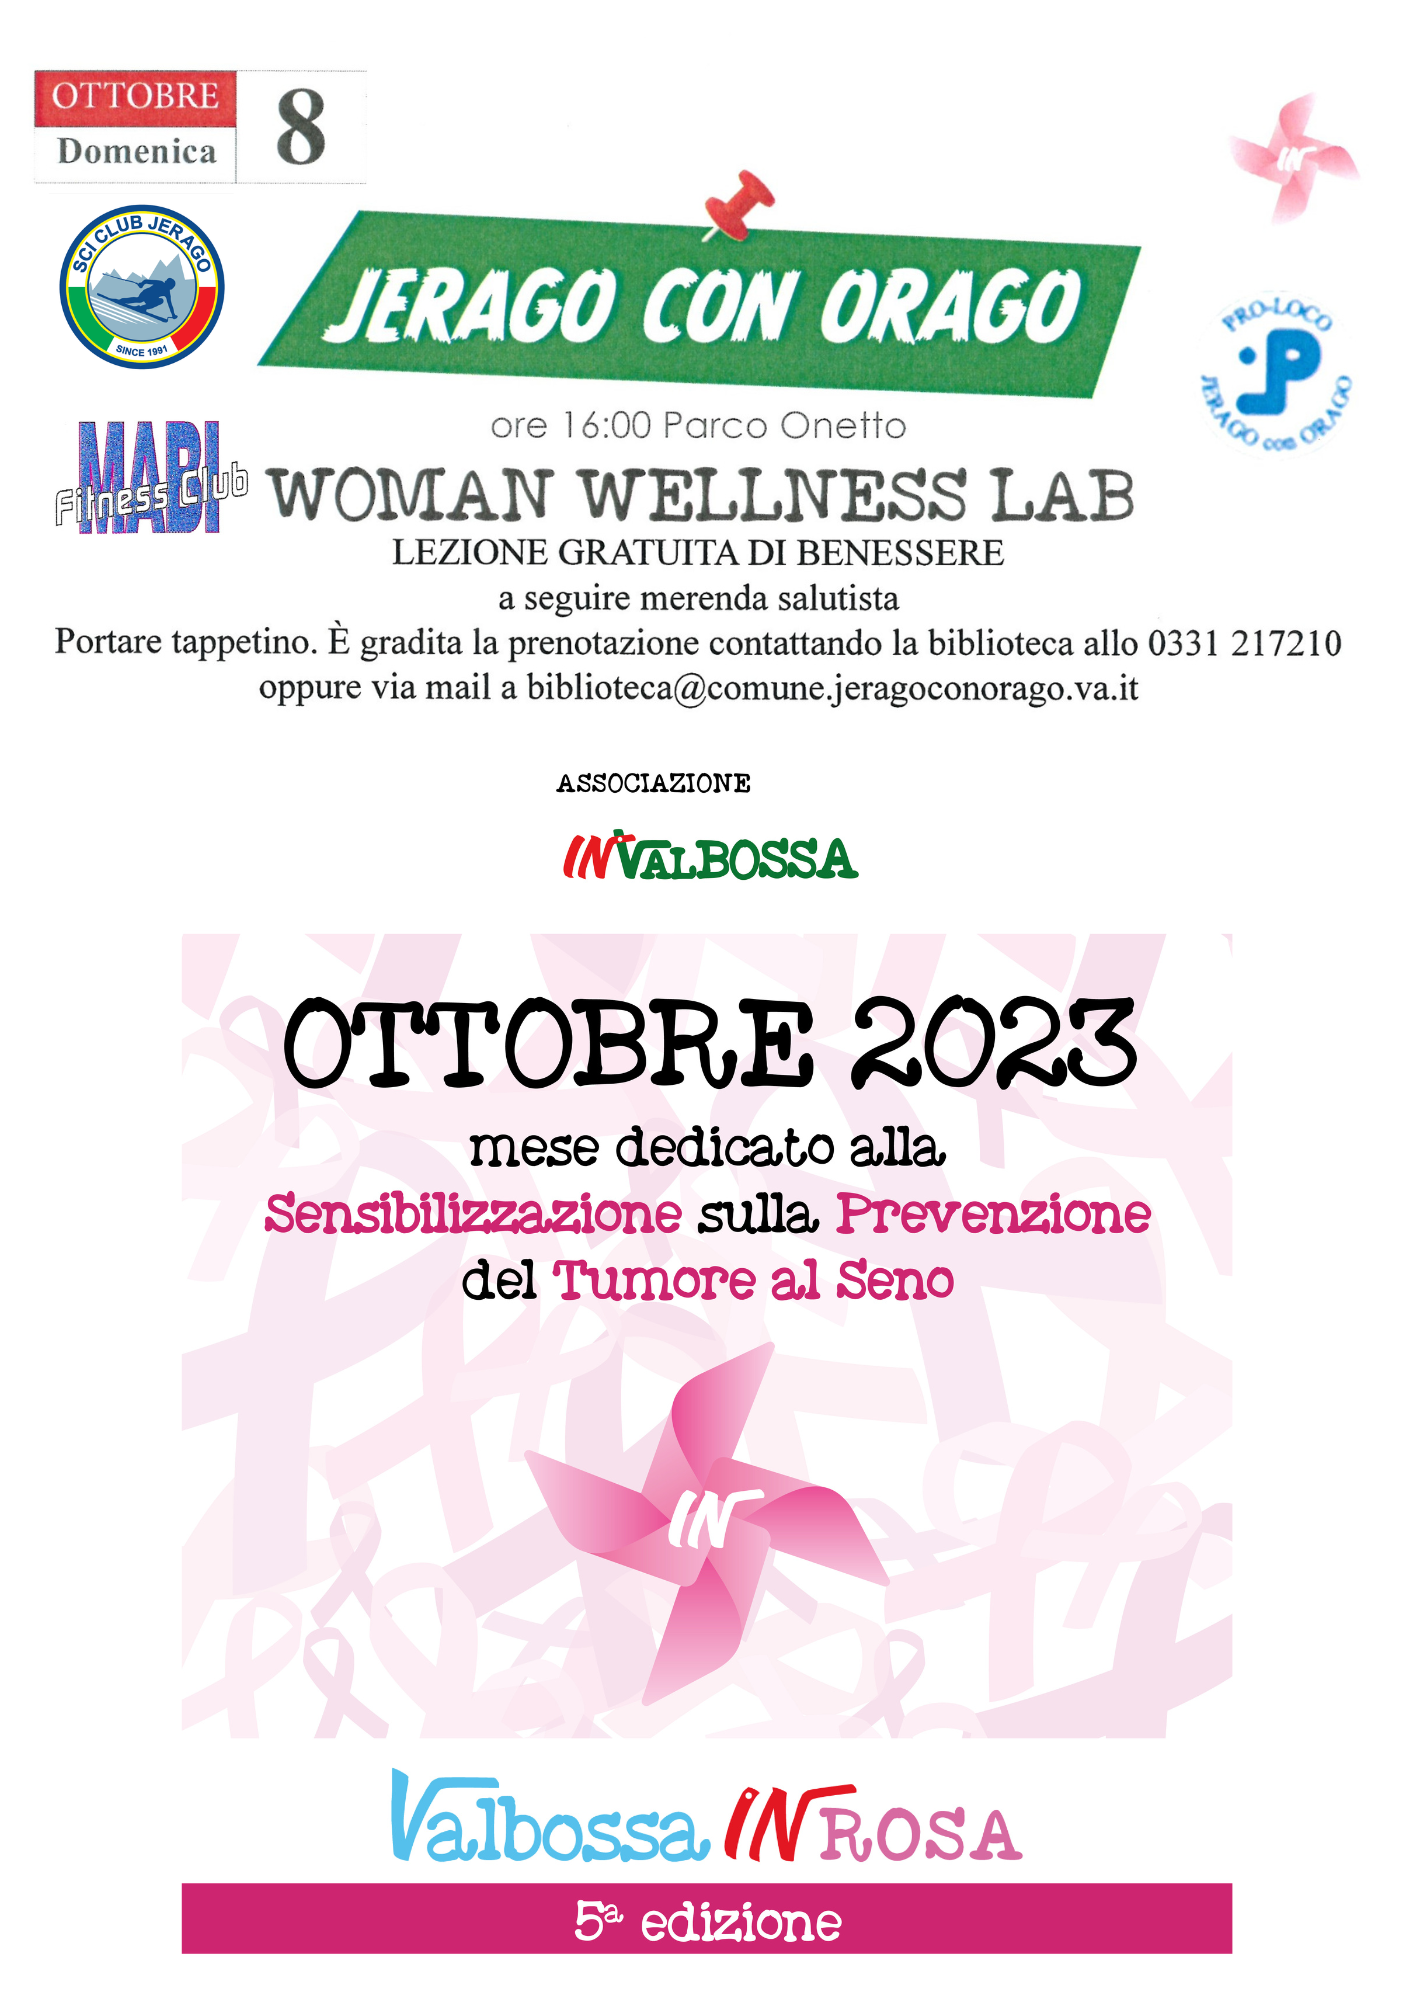 Locandina della Woman wellness lab